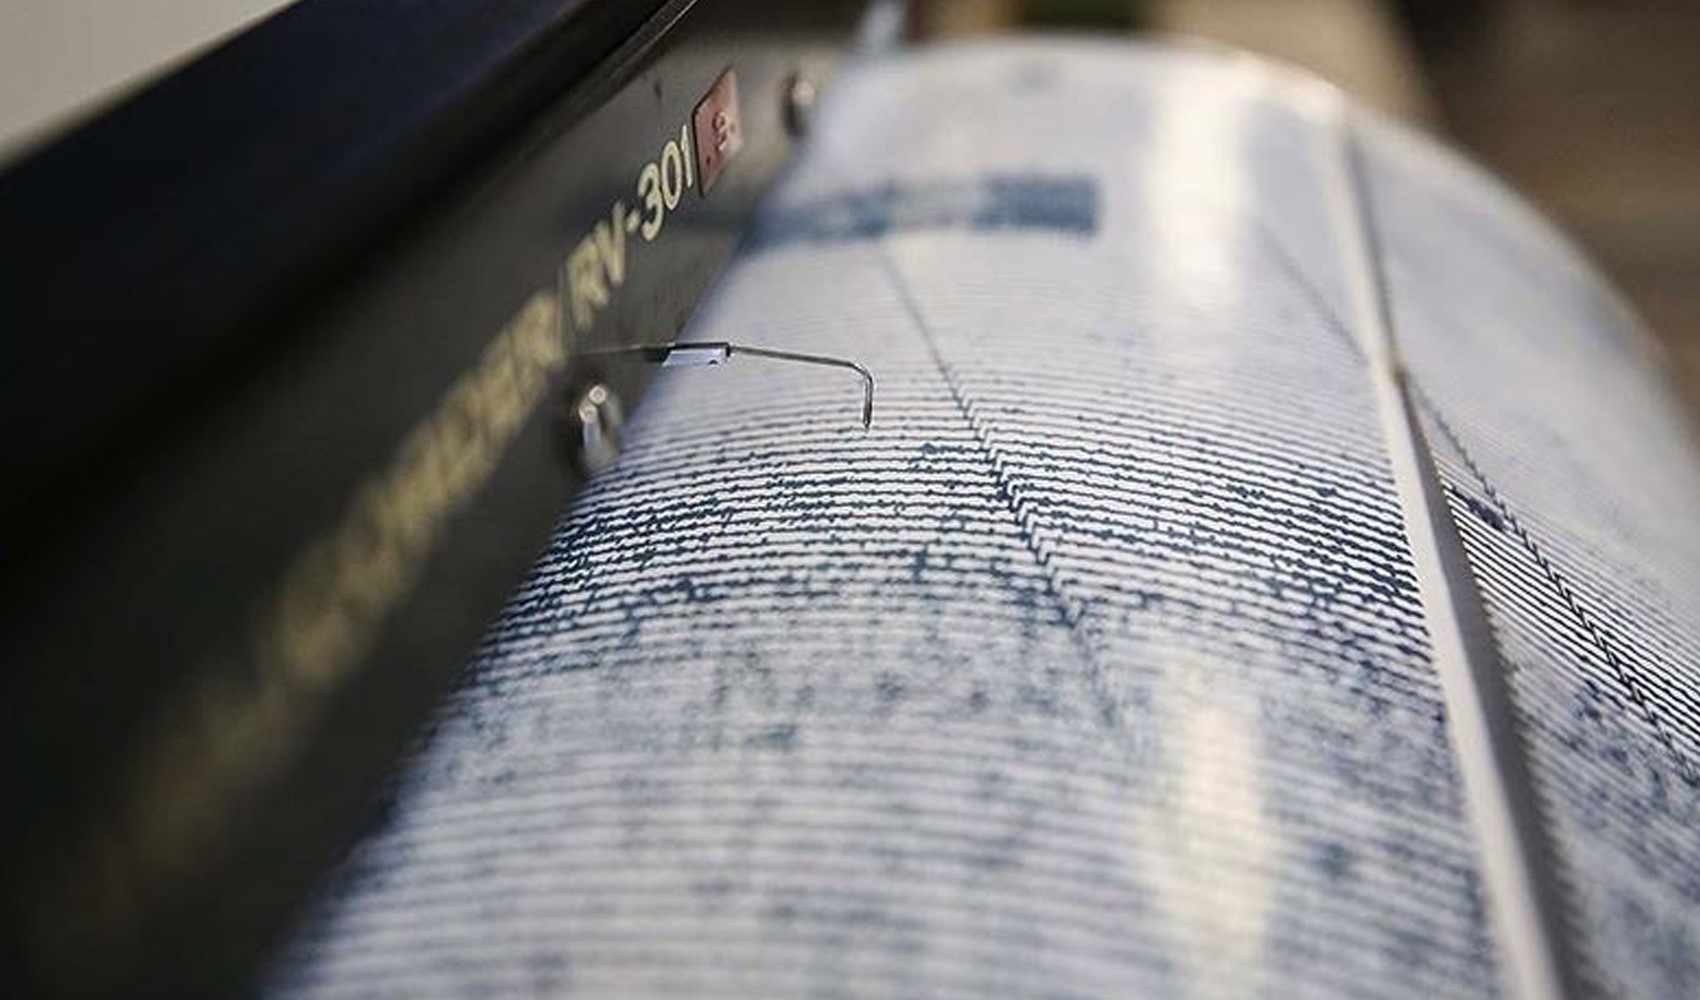 Malatya'nın Kale ilçesinde 3.6 büyüklüğünde deprem